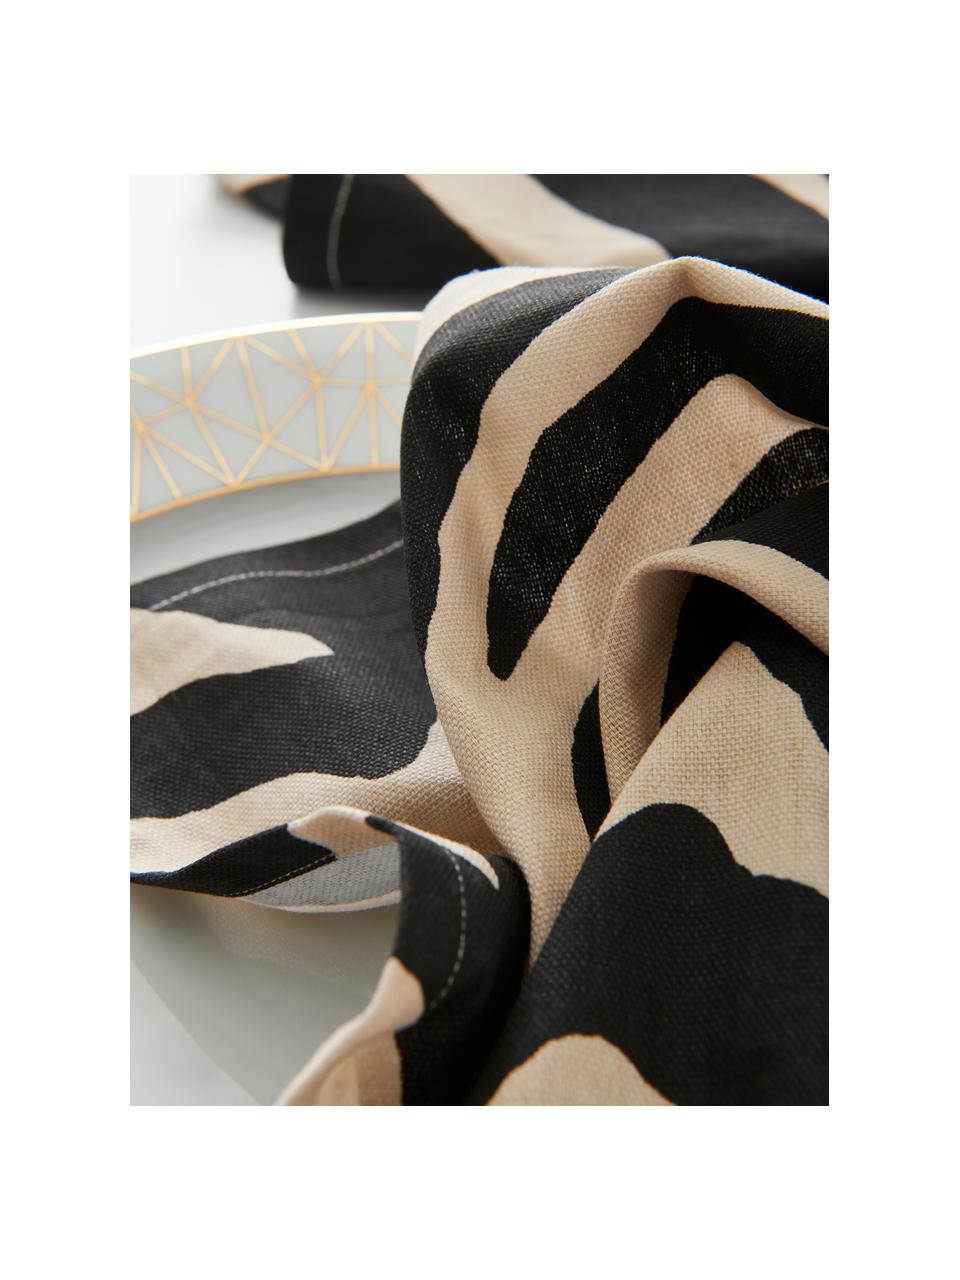 Serwetka z tkaniny Zebra, 2 szt., Bawełna, Czarny, kremowy, S 45 x D 45 cm